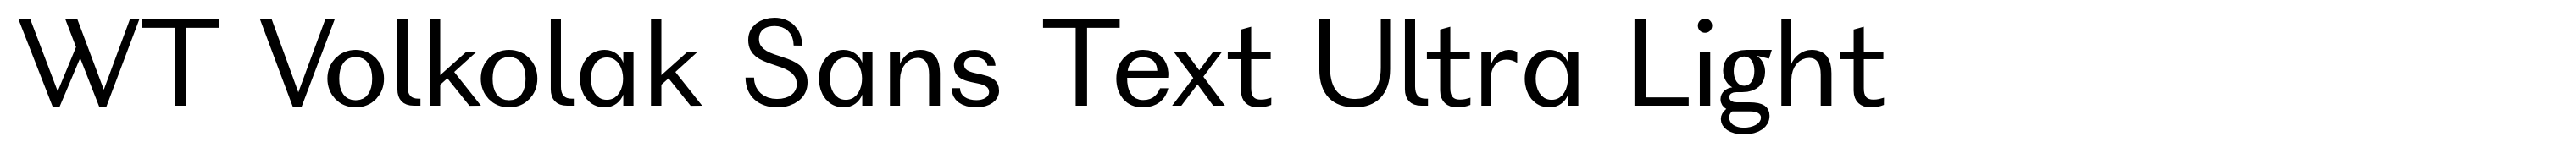 WT Volkolak Sans Text Ultra Light